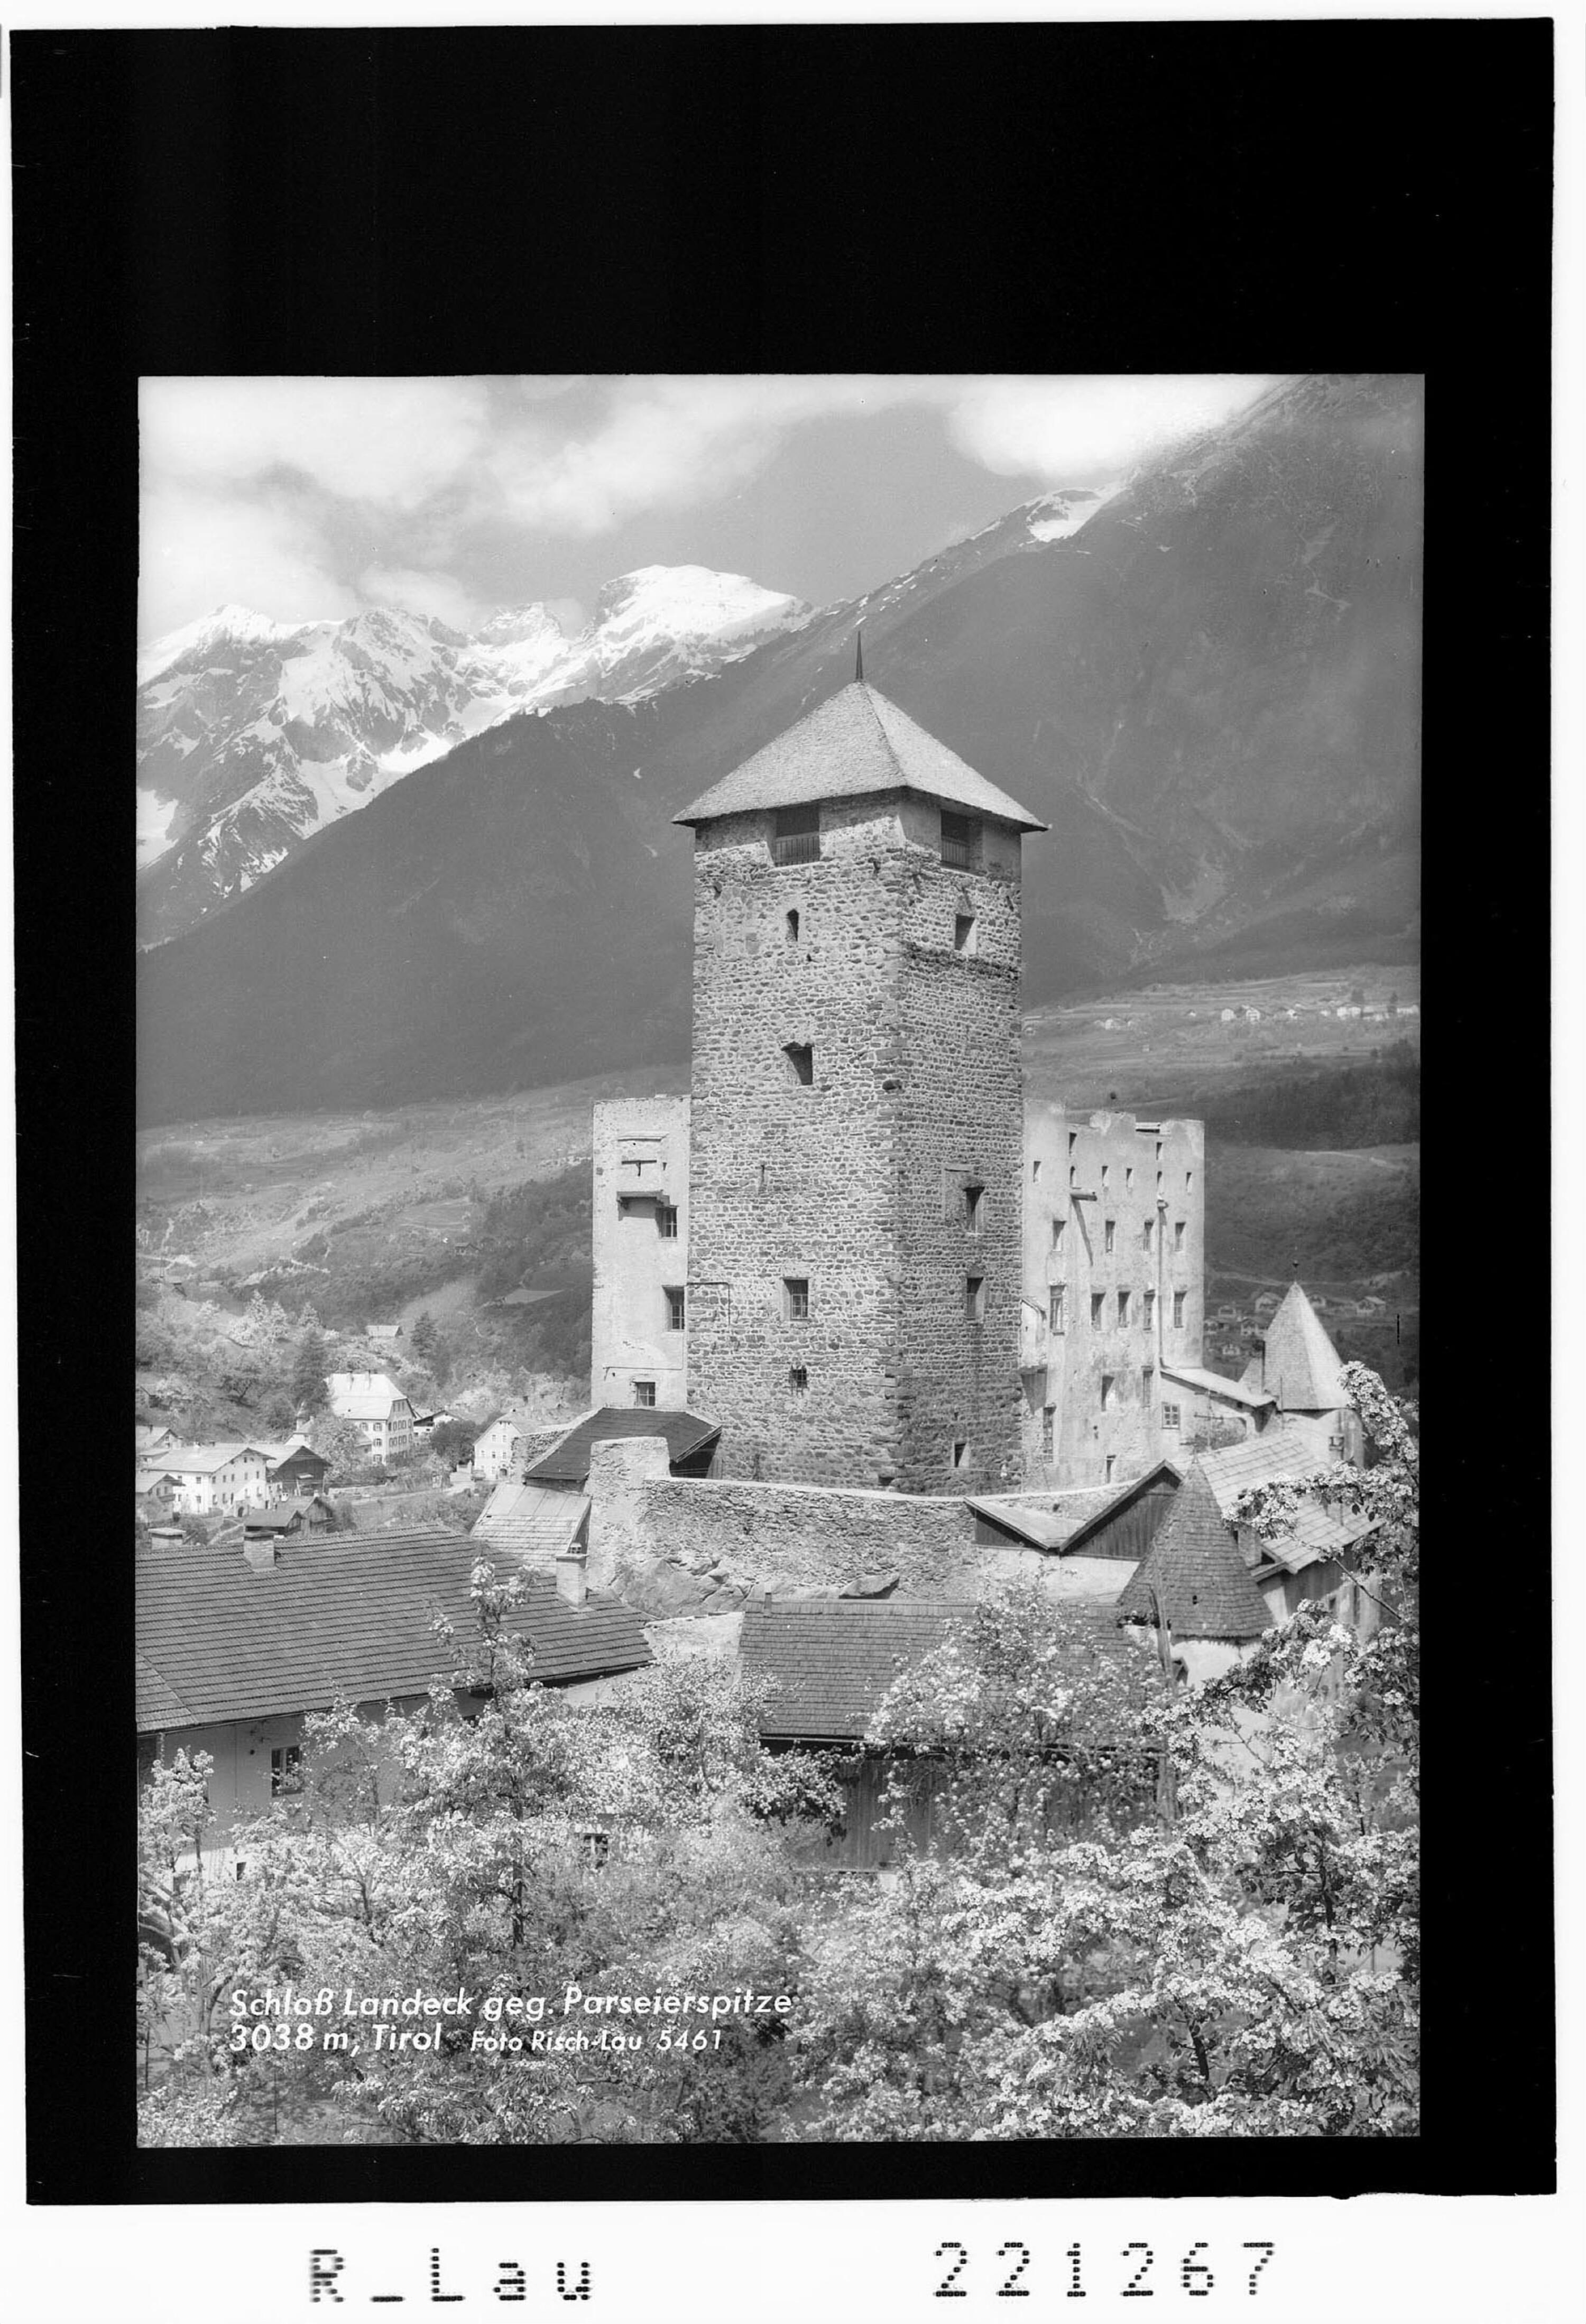 Schloss Landeck gegen Parseierspitze 3038 m / Tirol></div>


    <hr>
    <div class=